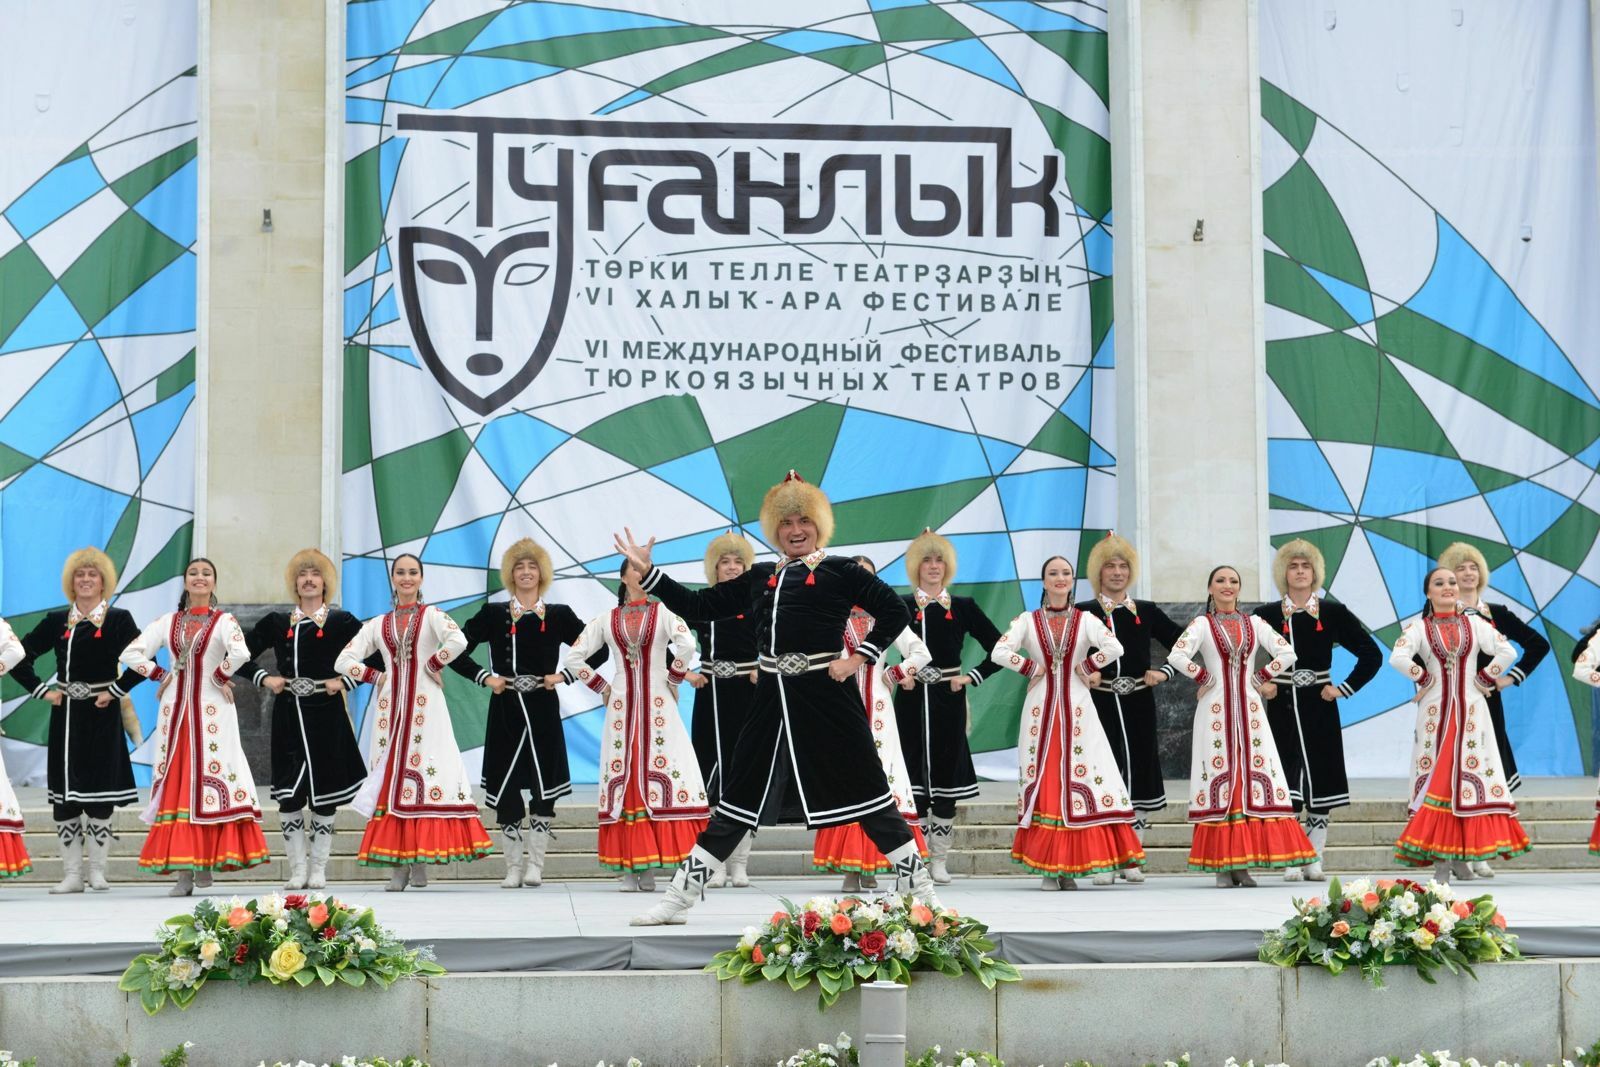 VIII Международный фестиваль национальных театров «Туганлык»